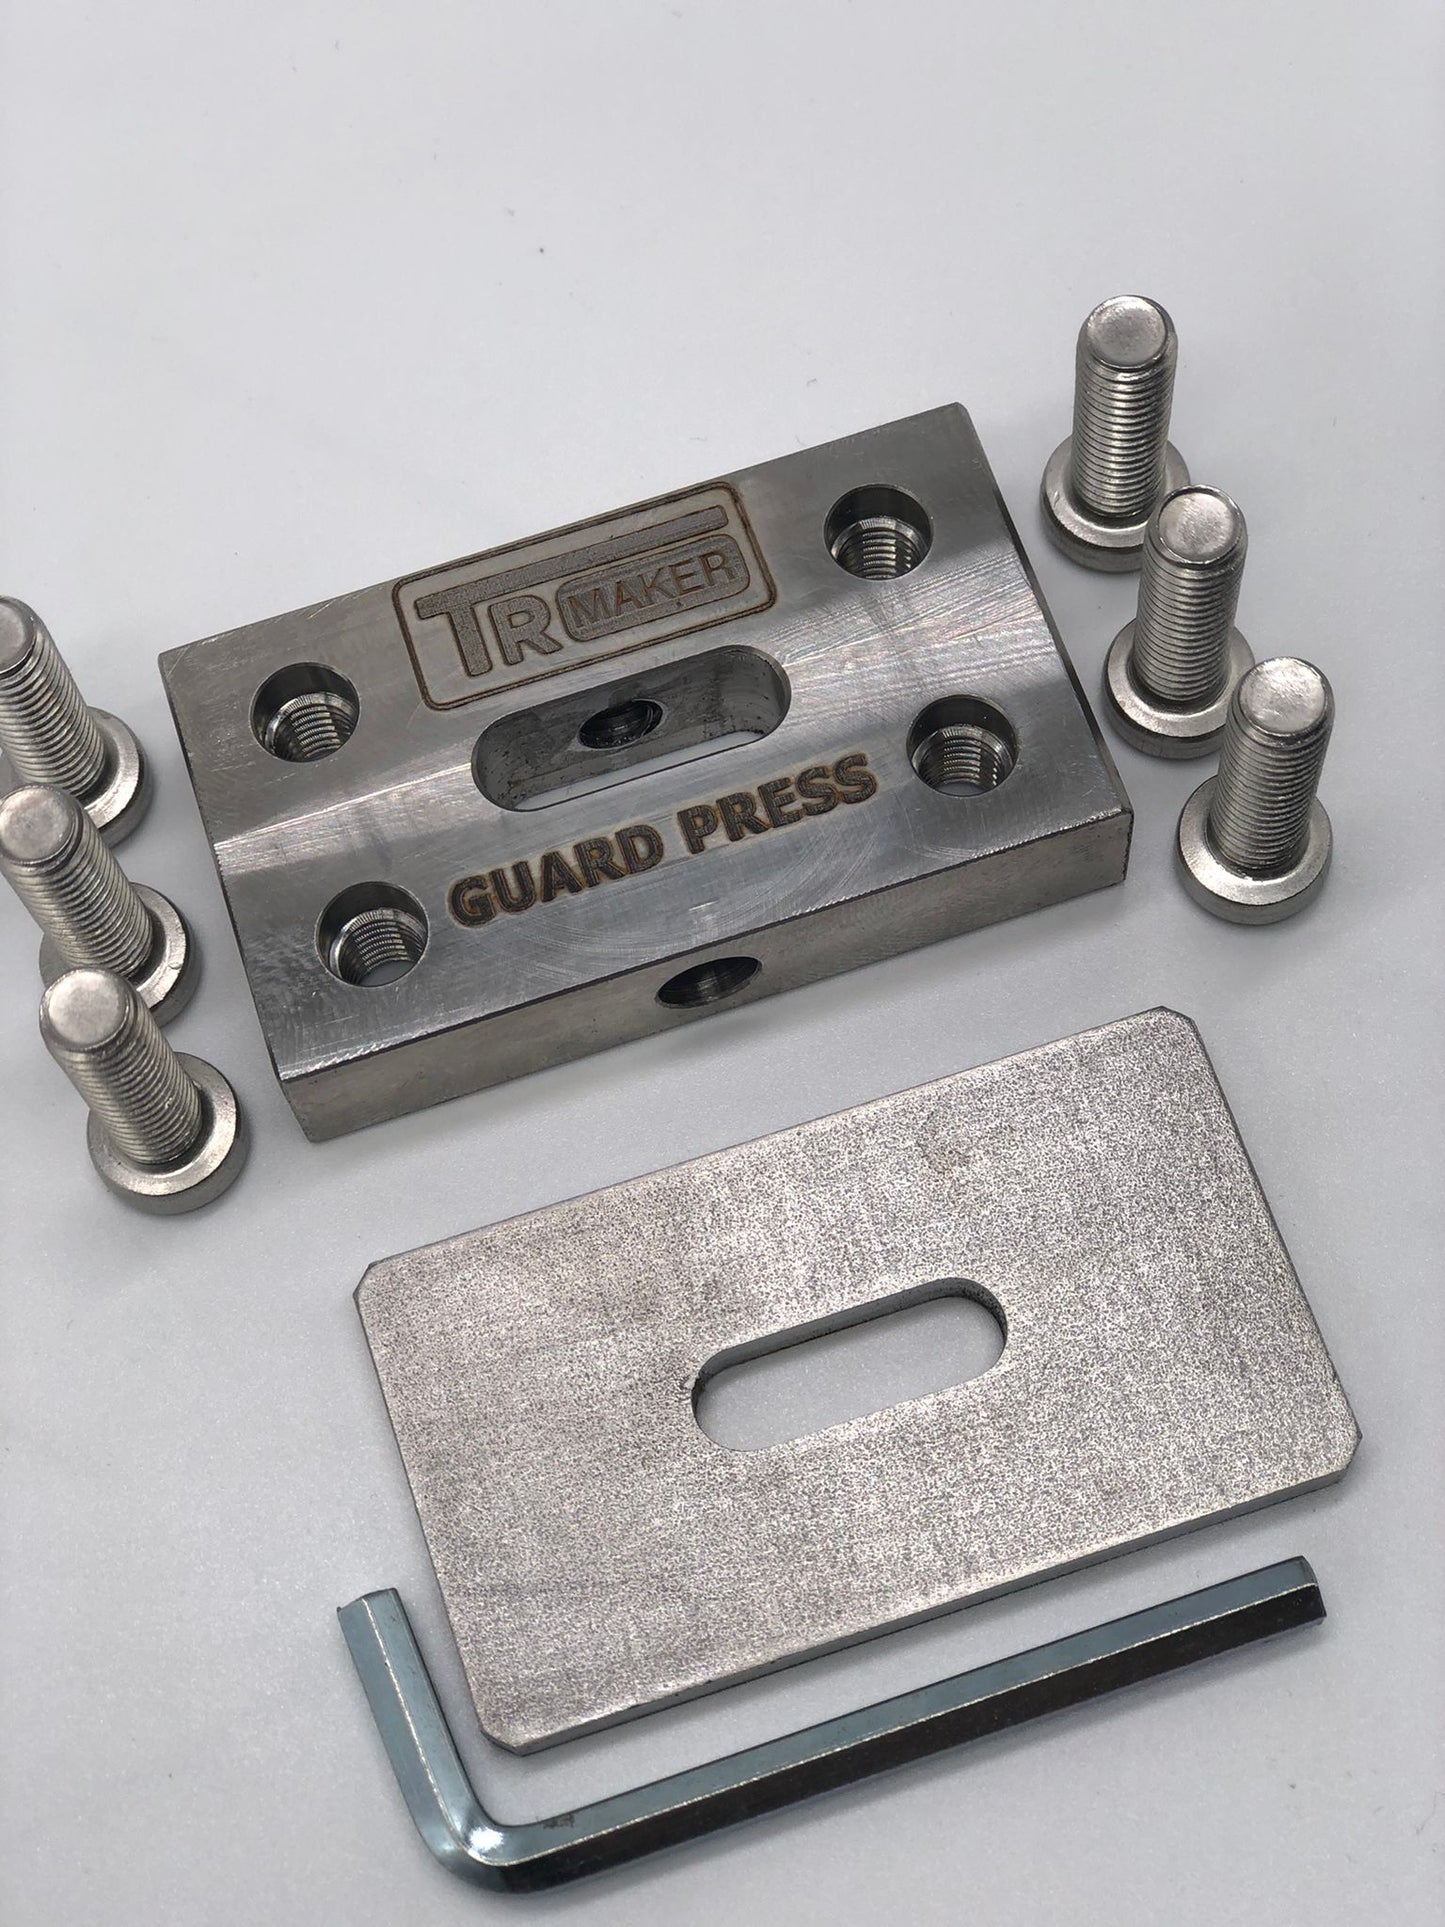 TR Maker Blade  Guard Press  Tool  Kit